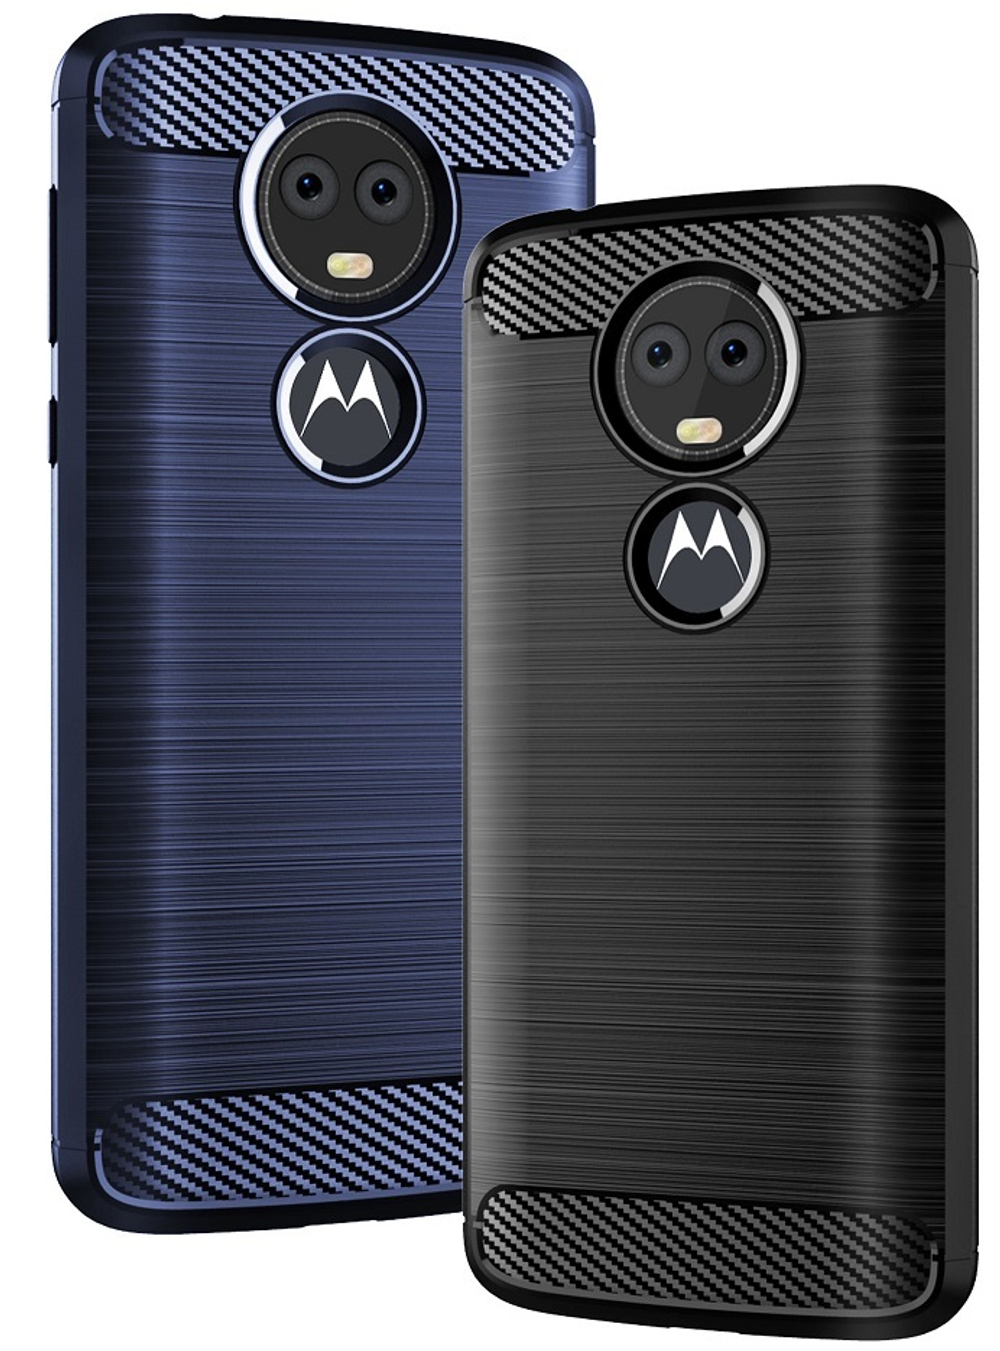 Чехол для Motorola Moto E5 Plus (E5 Supra) цвет Black (черный), серия Carbon от Caseport